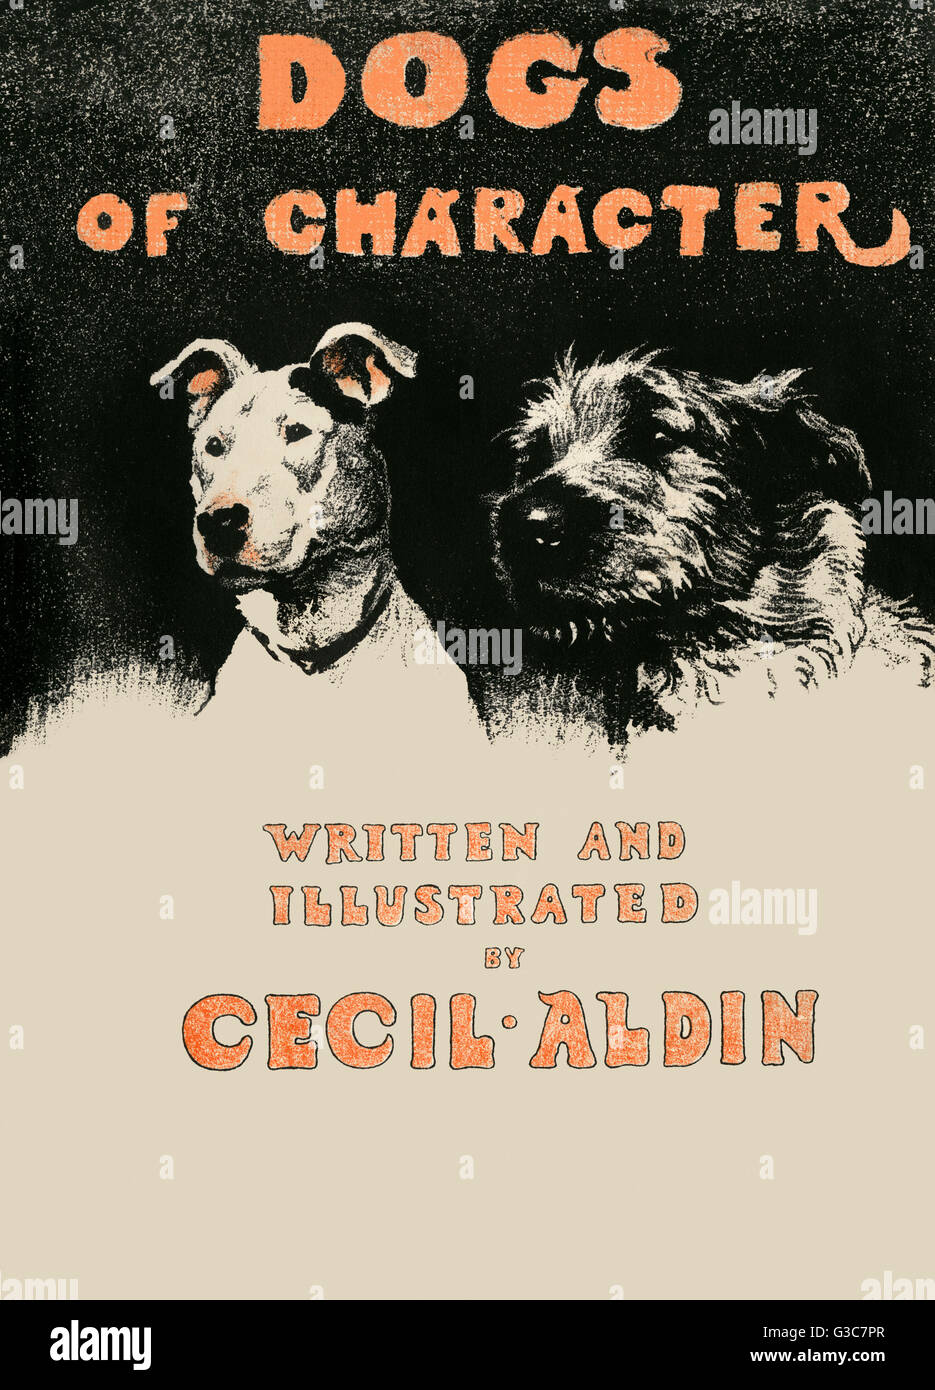 Couverture par Cecil Aldin, chiens de caractère Banque D'Images